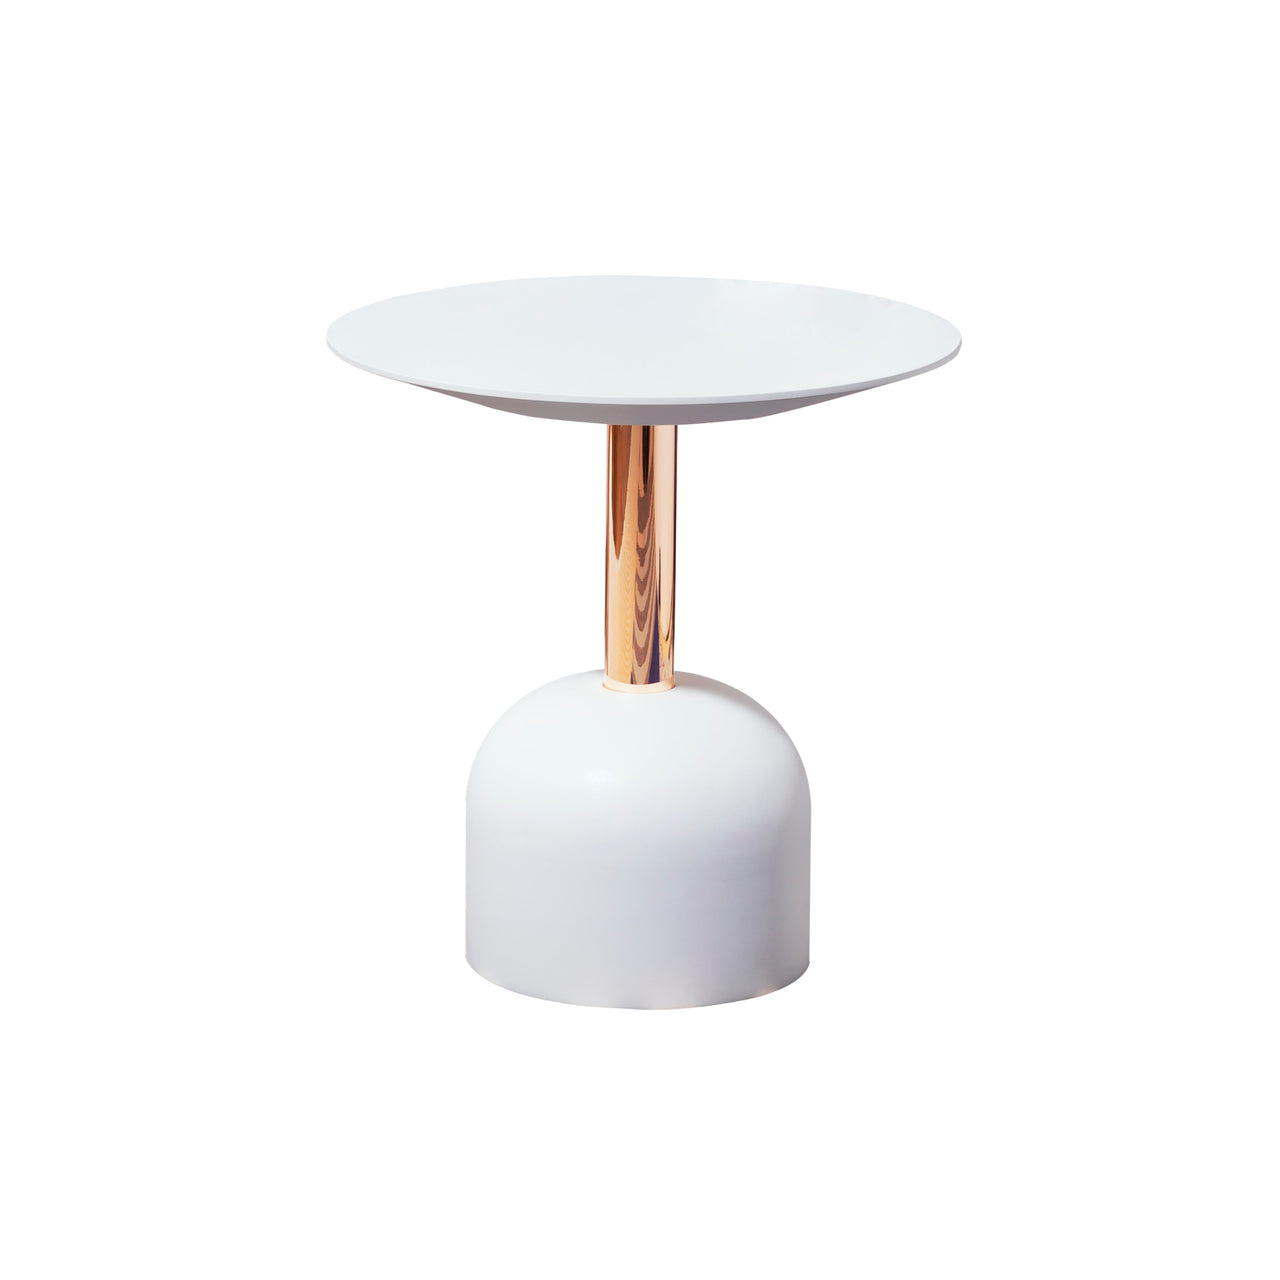 Illo Coffee Table: Small + Lacquered White + Copper + Lacquered White